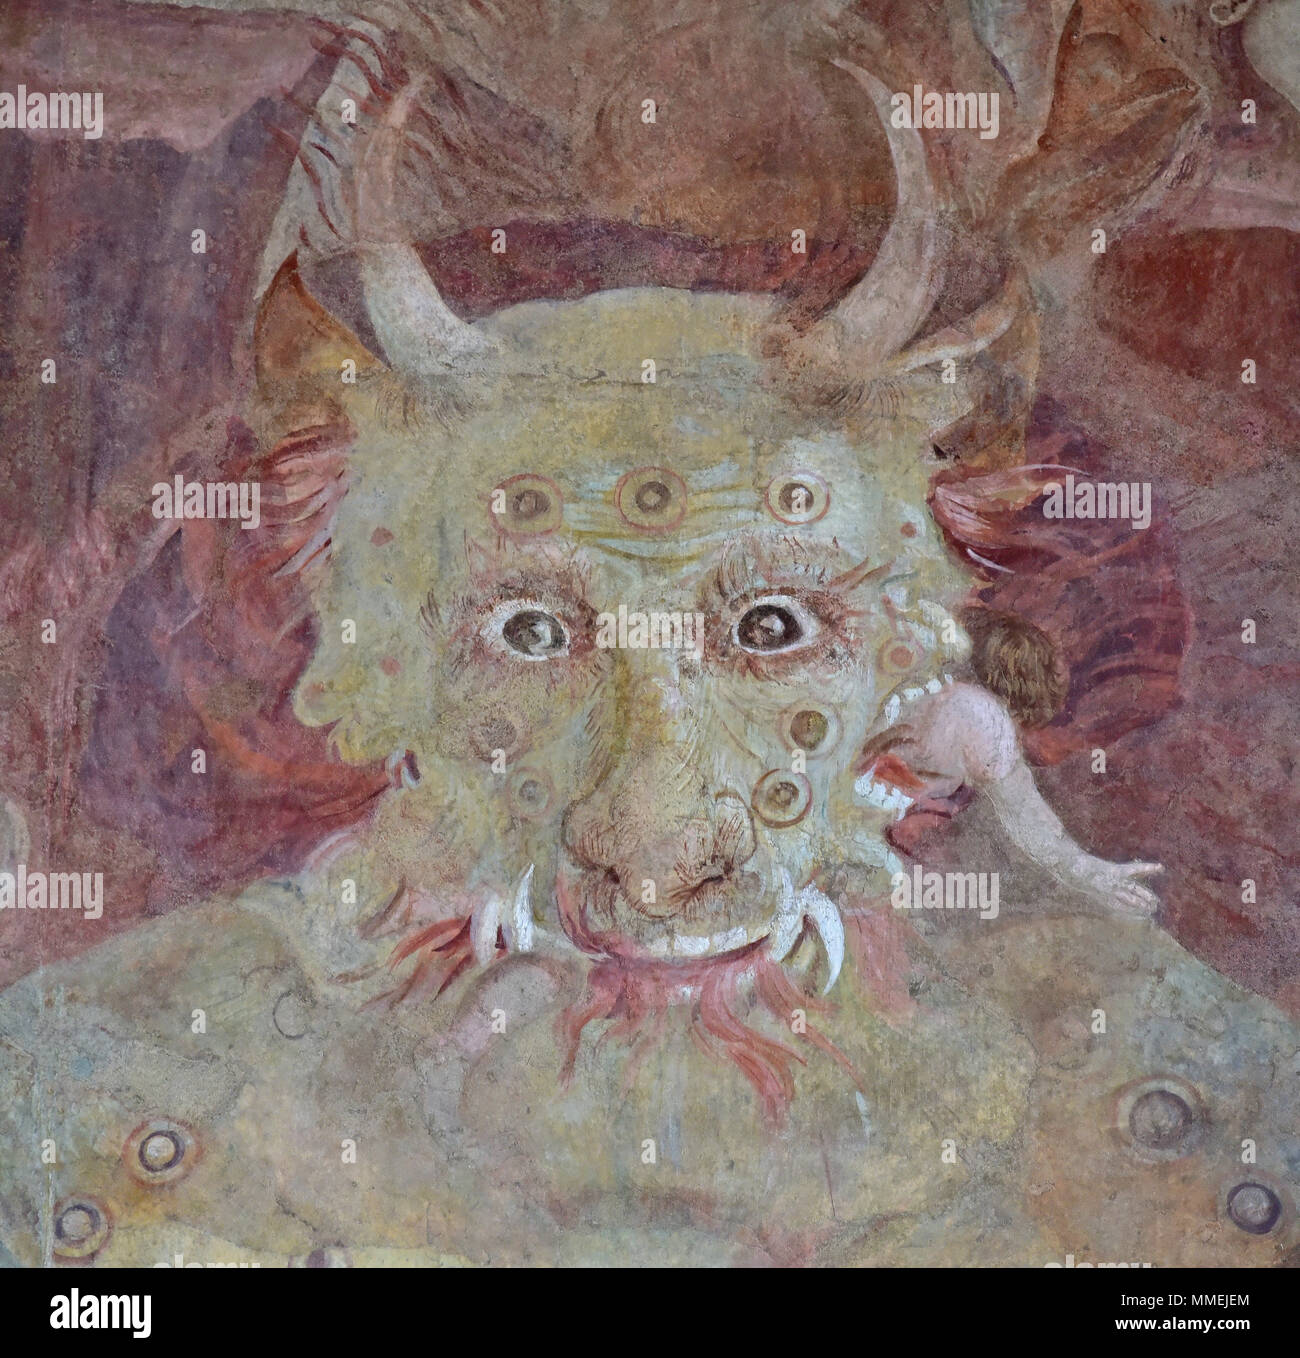 Le diable dévore la damed, partie de la fresque du Jugement Dernier Camposanto de Pise, Pise, Italie Banque D'Images